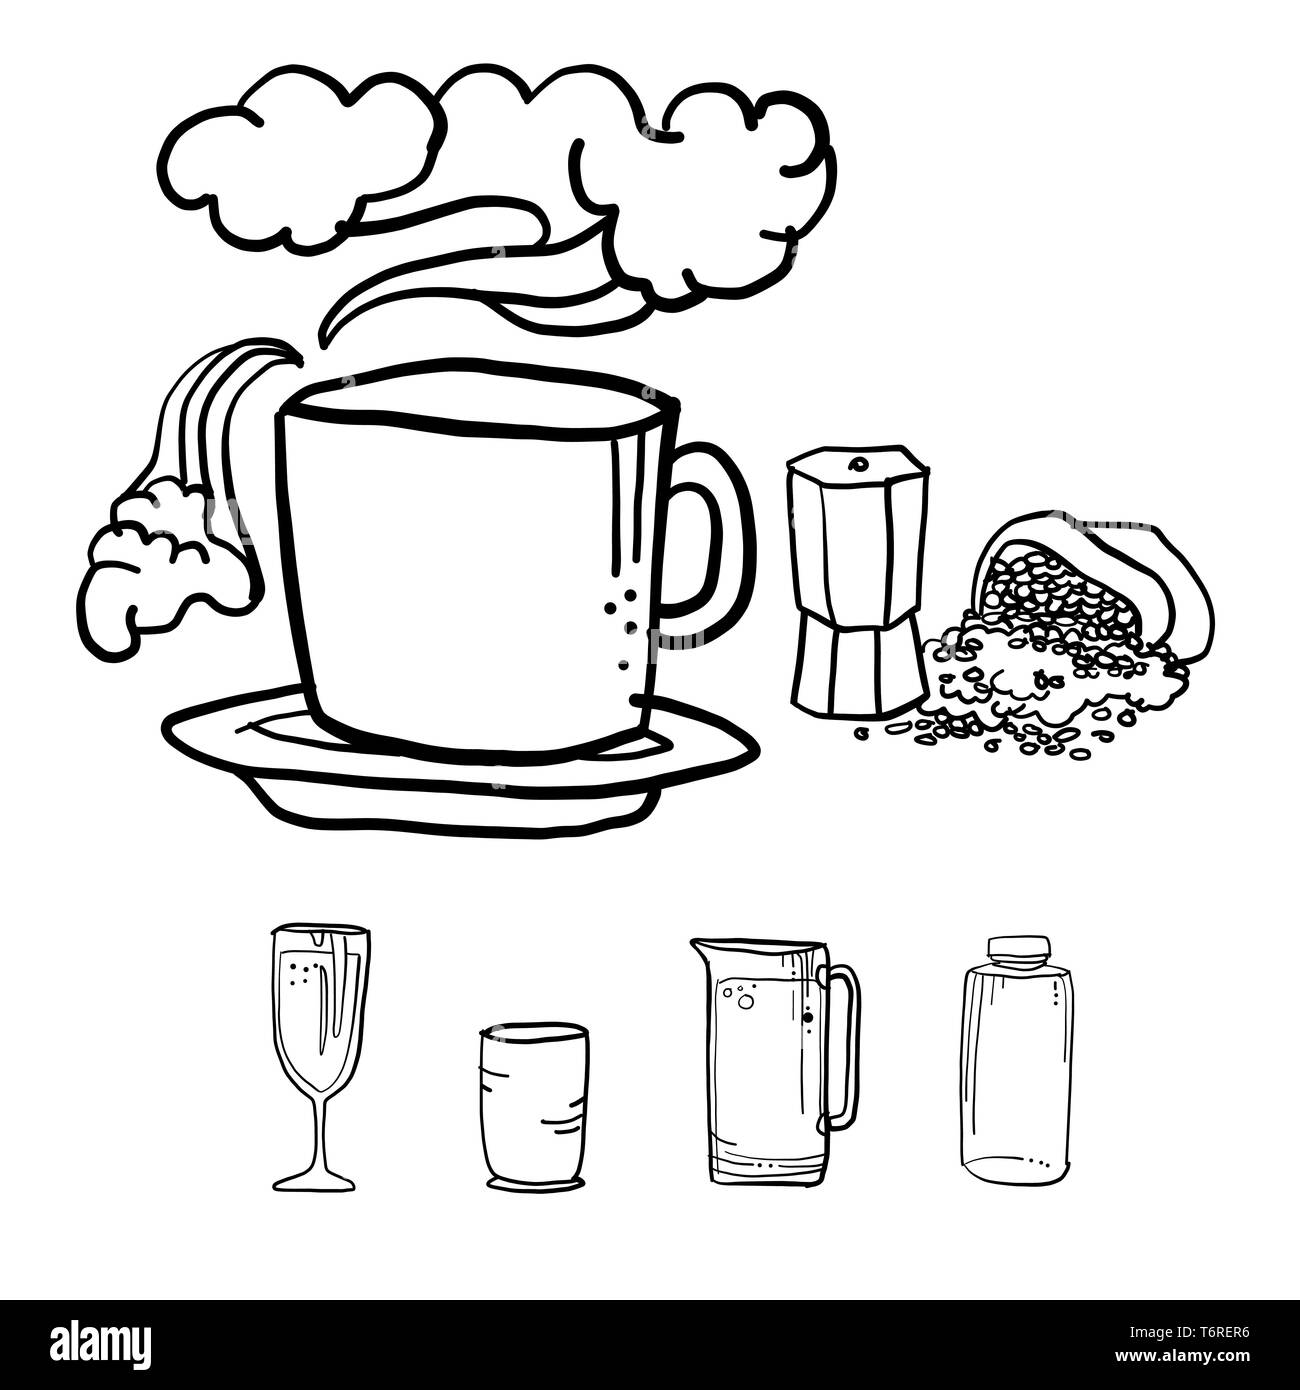 Tasse de café avec des ustensiles, en dessin vectoriel style doodle Illustration de Vecteur